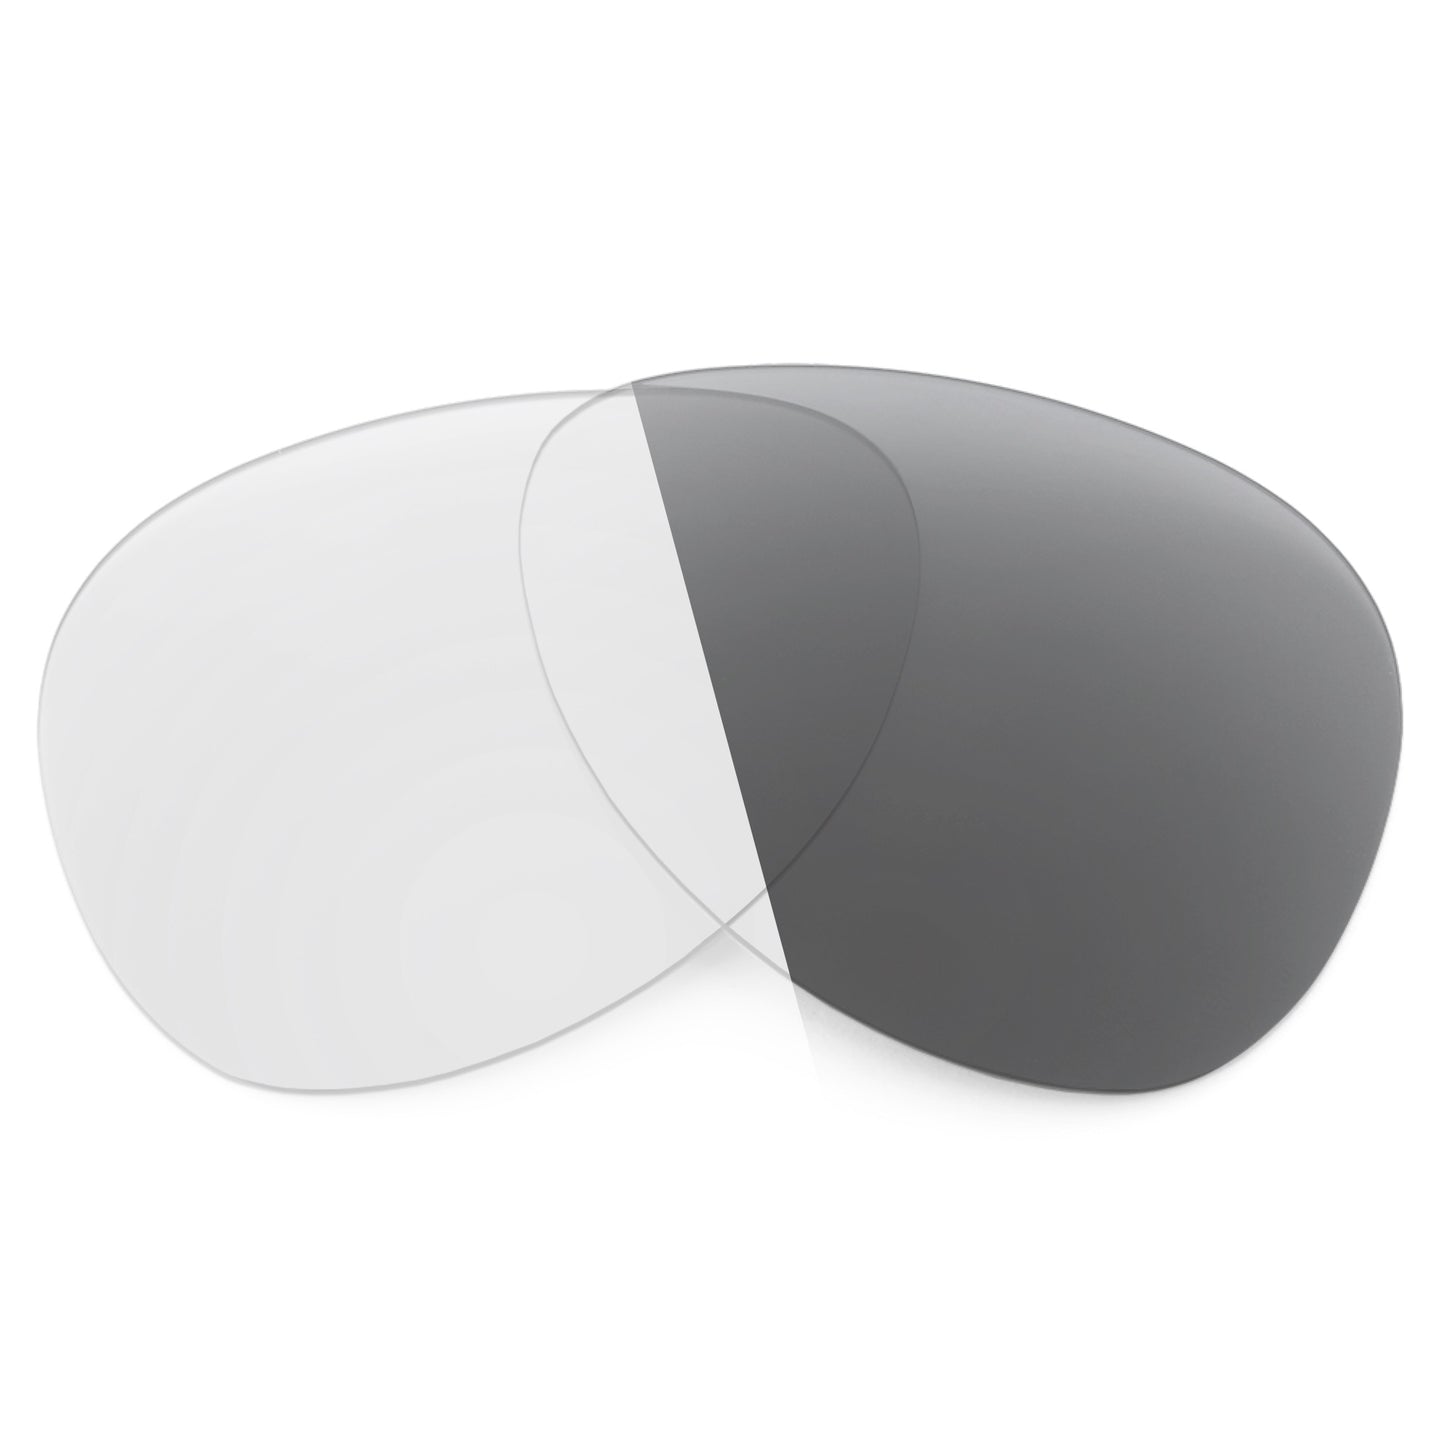 Revant replacement lenses for Arnette 50-50 Grand AN4243 Non-Polarized Adapt Gray Photochromic